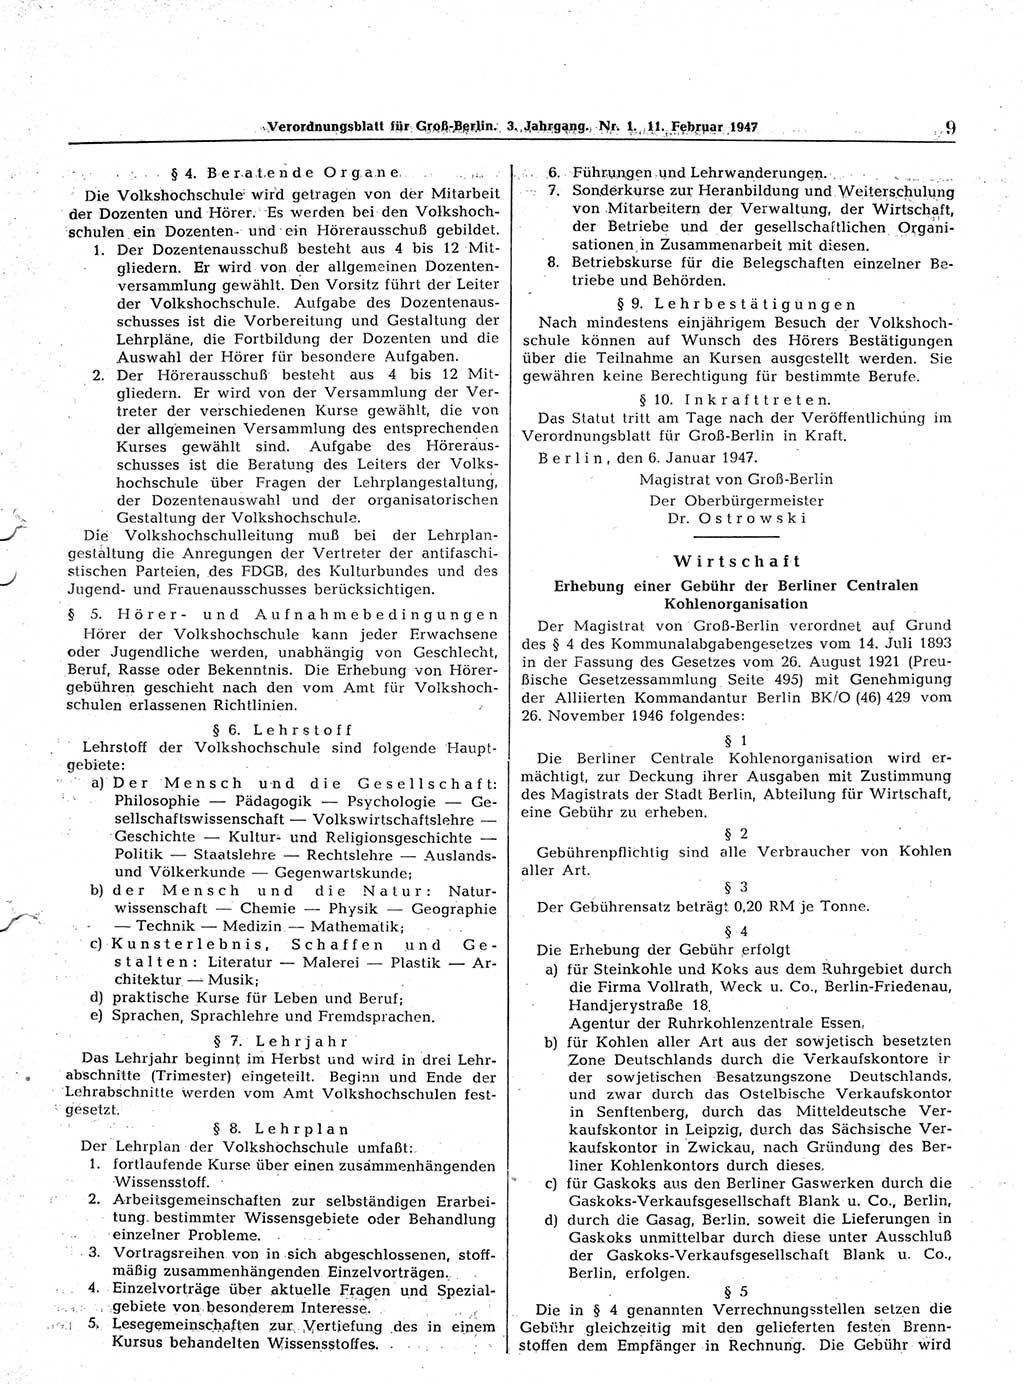 Verordnungsblatt (VOBl.) für Groß-Berlin 1947, Seite 9 (VOBl. Bln. 1947, S. 9)